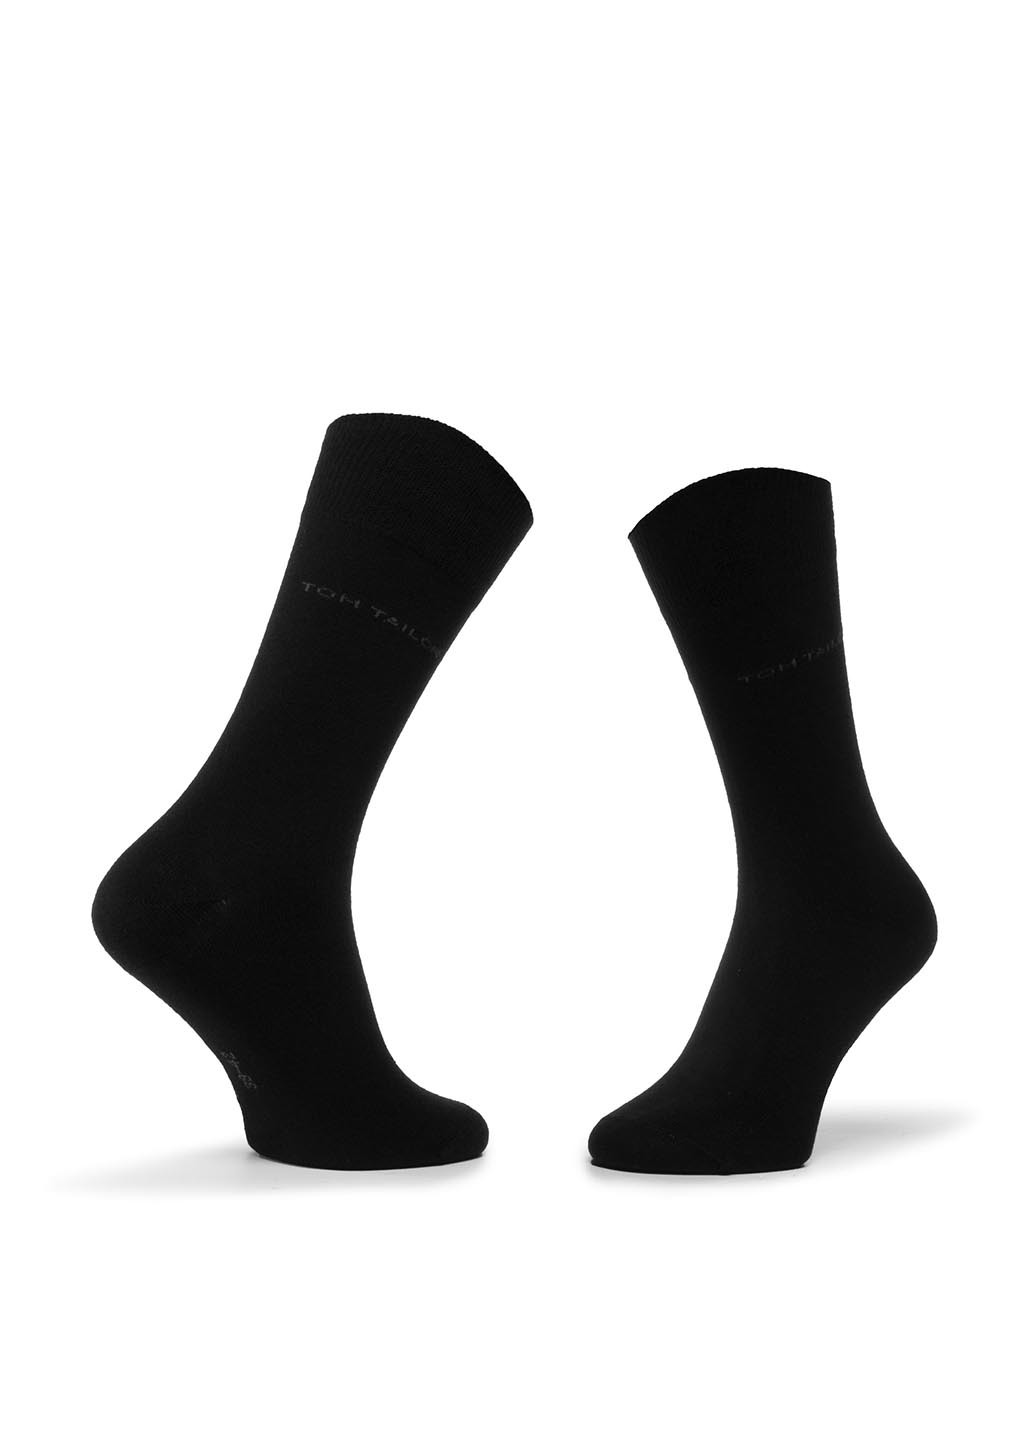 Шкарпетки чоловічі Tom Tailor 90188C 39-42 BLACK Tom Tailor 90188c 39-42 black горошок чорні повсякденні